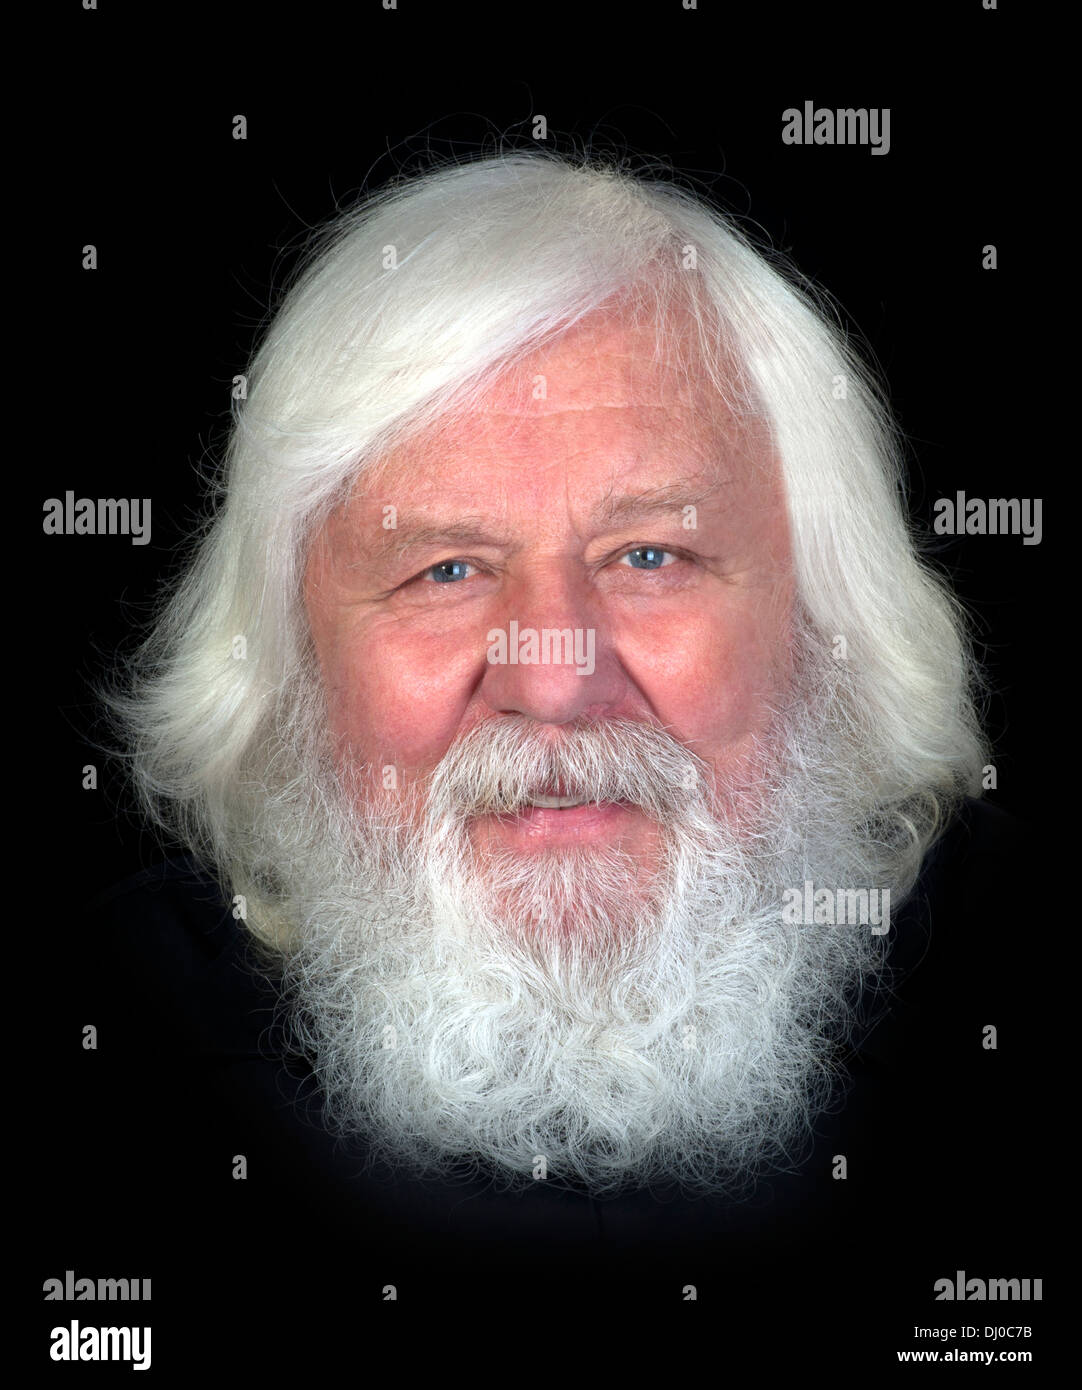 Heureux et en santé, un homme âgé avec barbe complète, smiling Banque D'Images